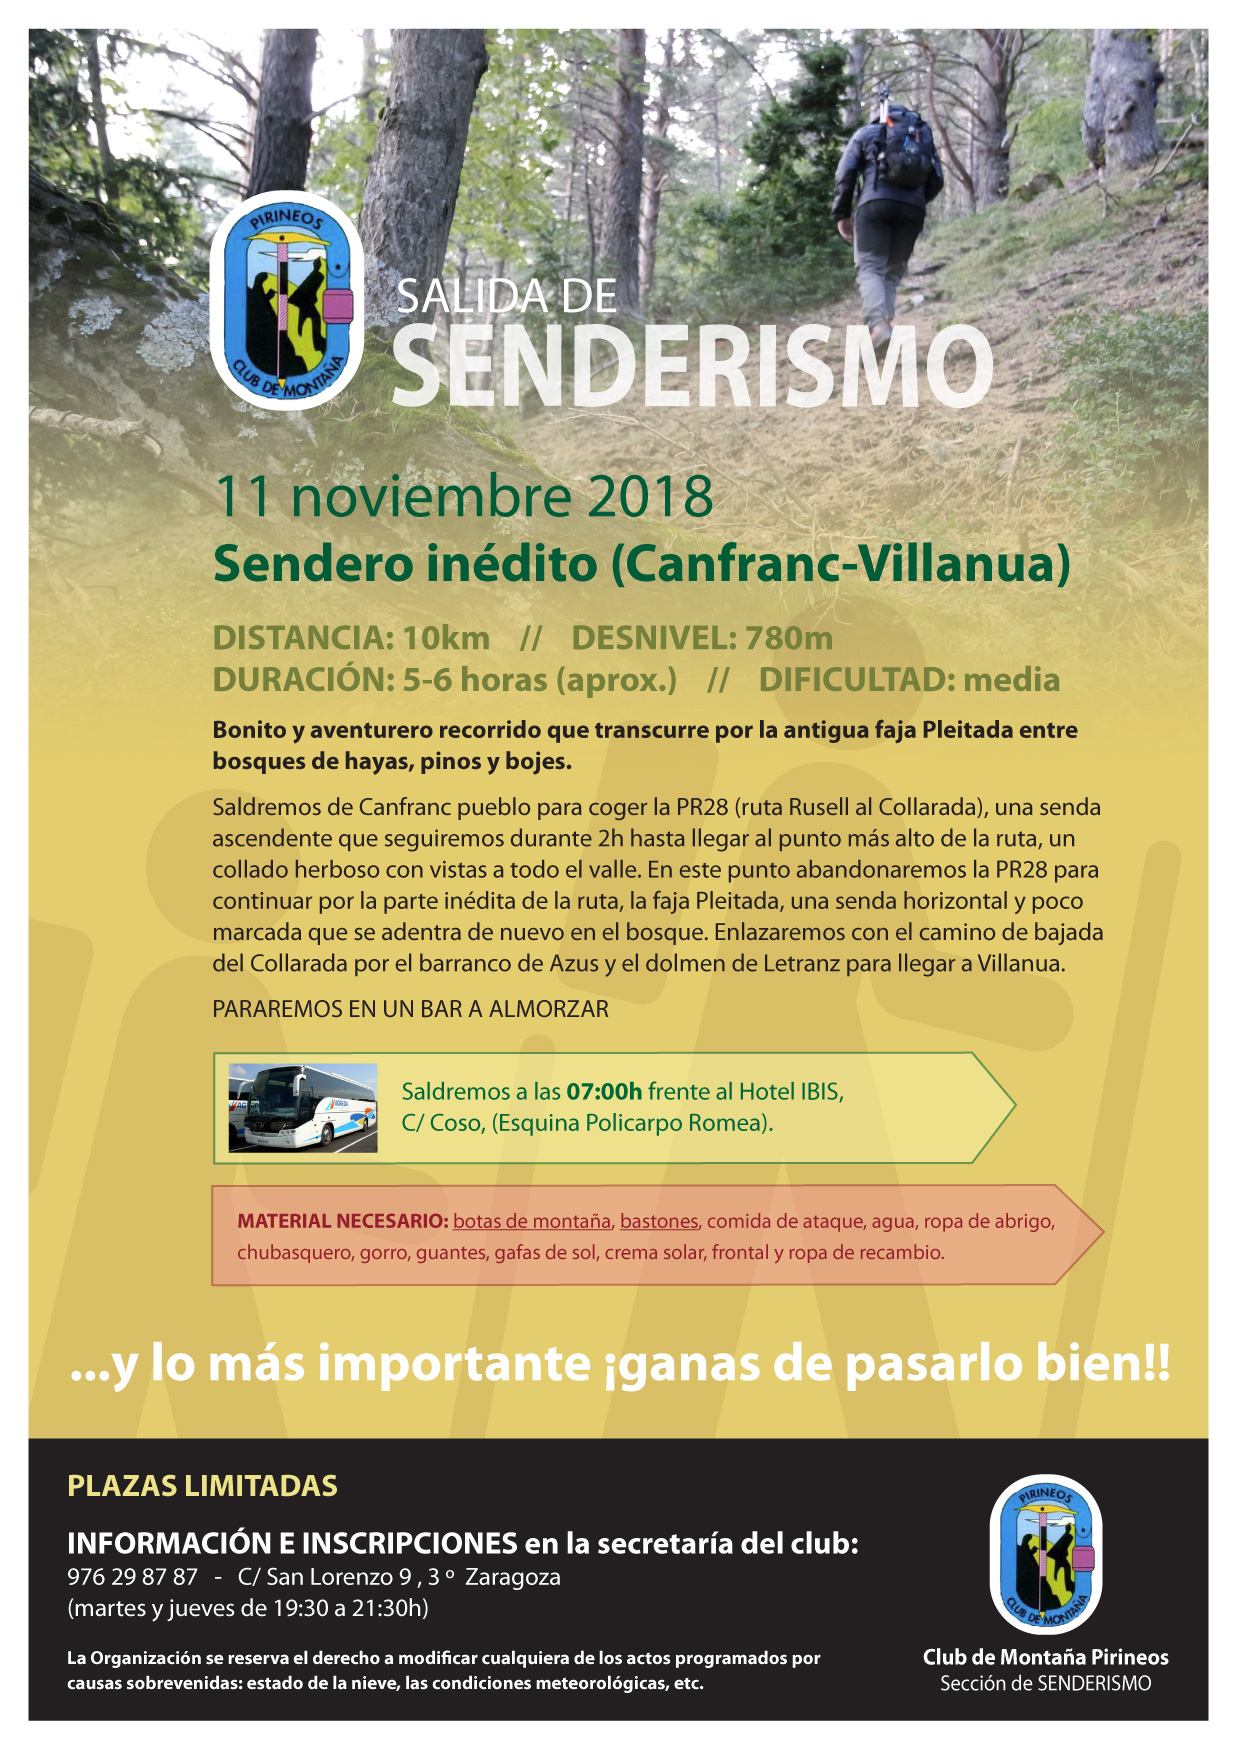 Cartel Canfranc-Villanua 11-11-2018